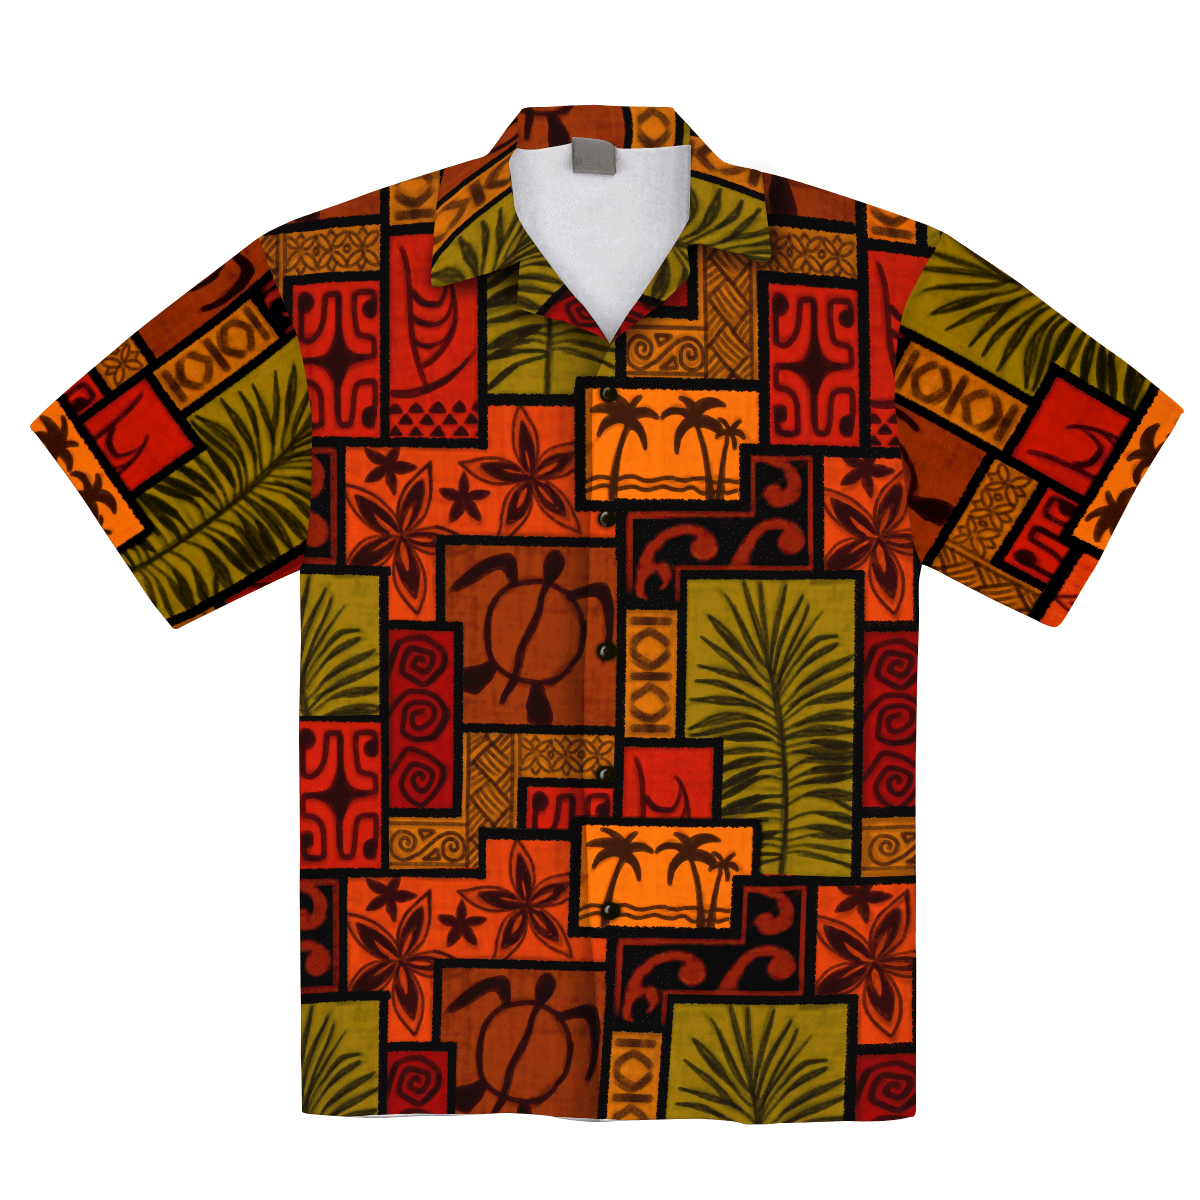 Africanpattern Turtle Tropical Hawaiian Aloha Shirt For Men Women – Hothot